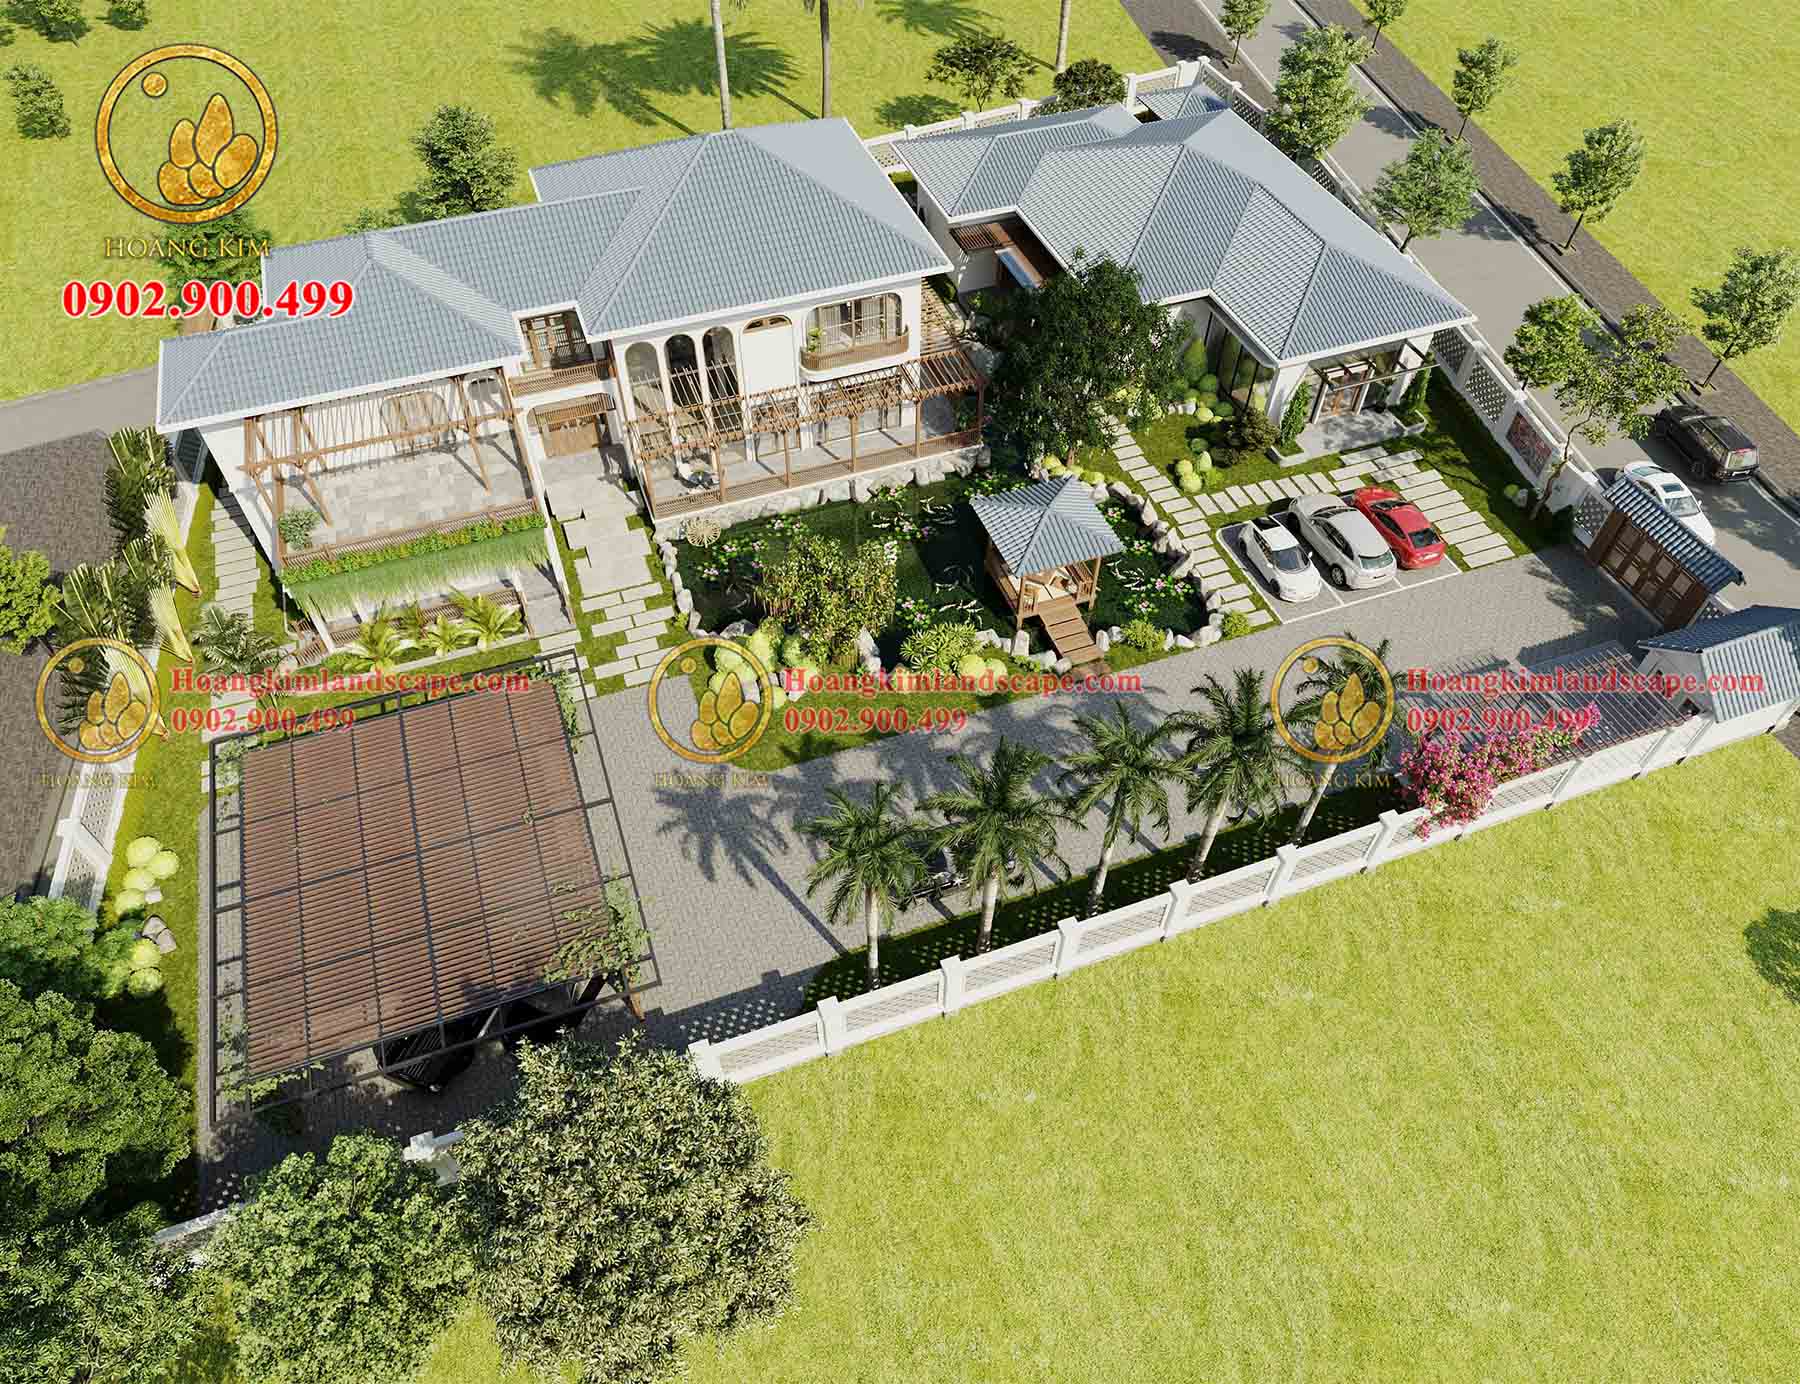 Mẫu Biệt Thự Nhà Vườn Khủng 300m2 Đẹp Đẳng Cấp Tại Châu Thành Tiền Giang -  YouTube